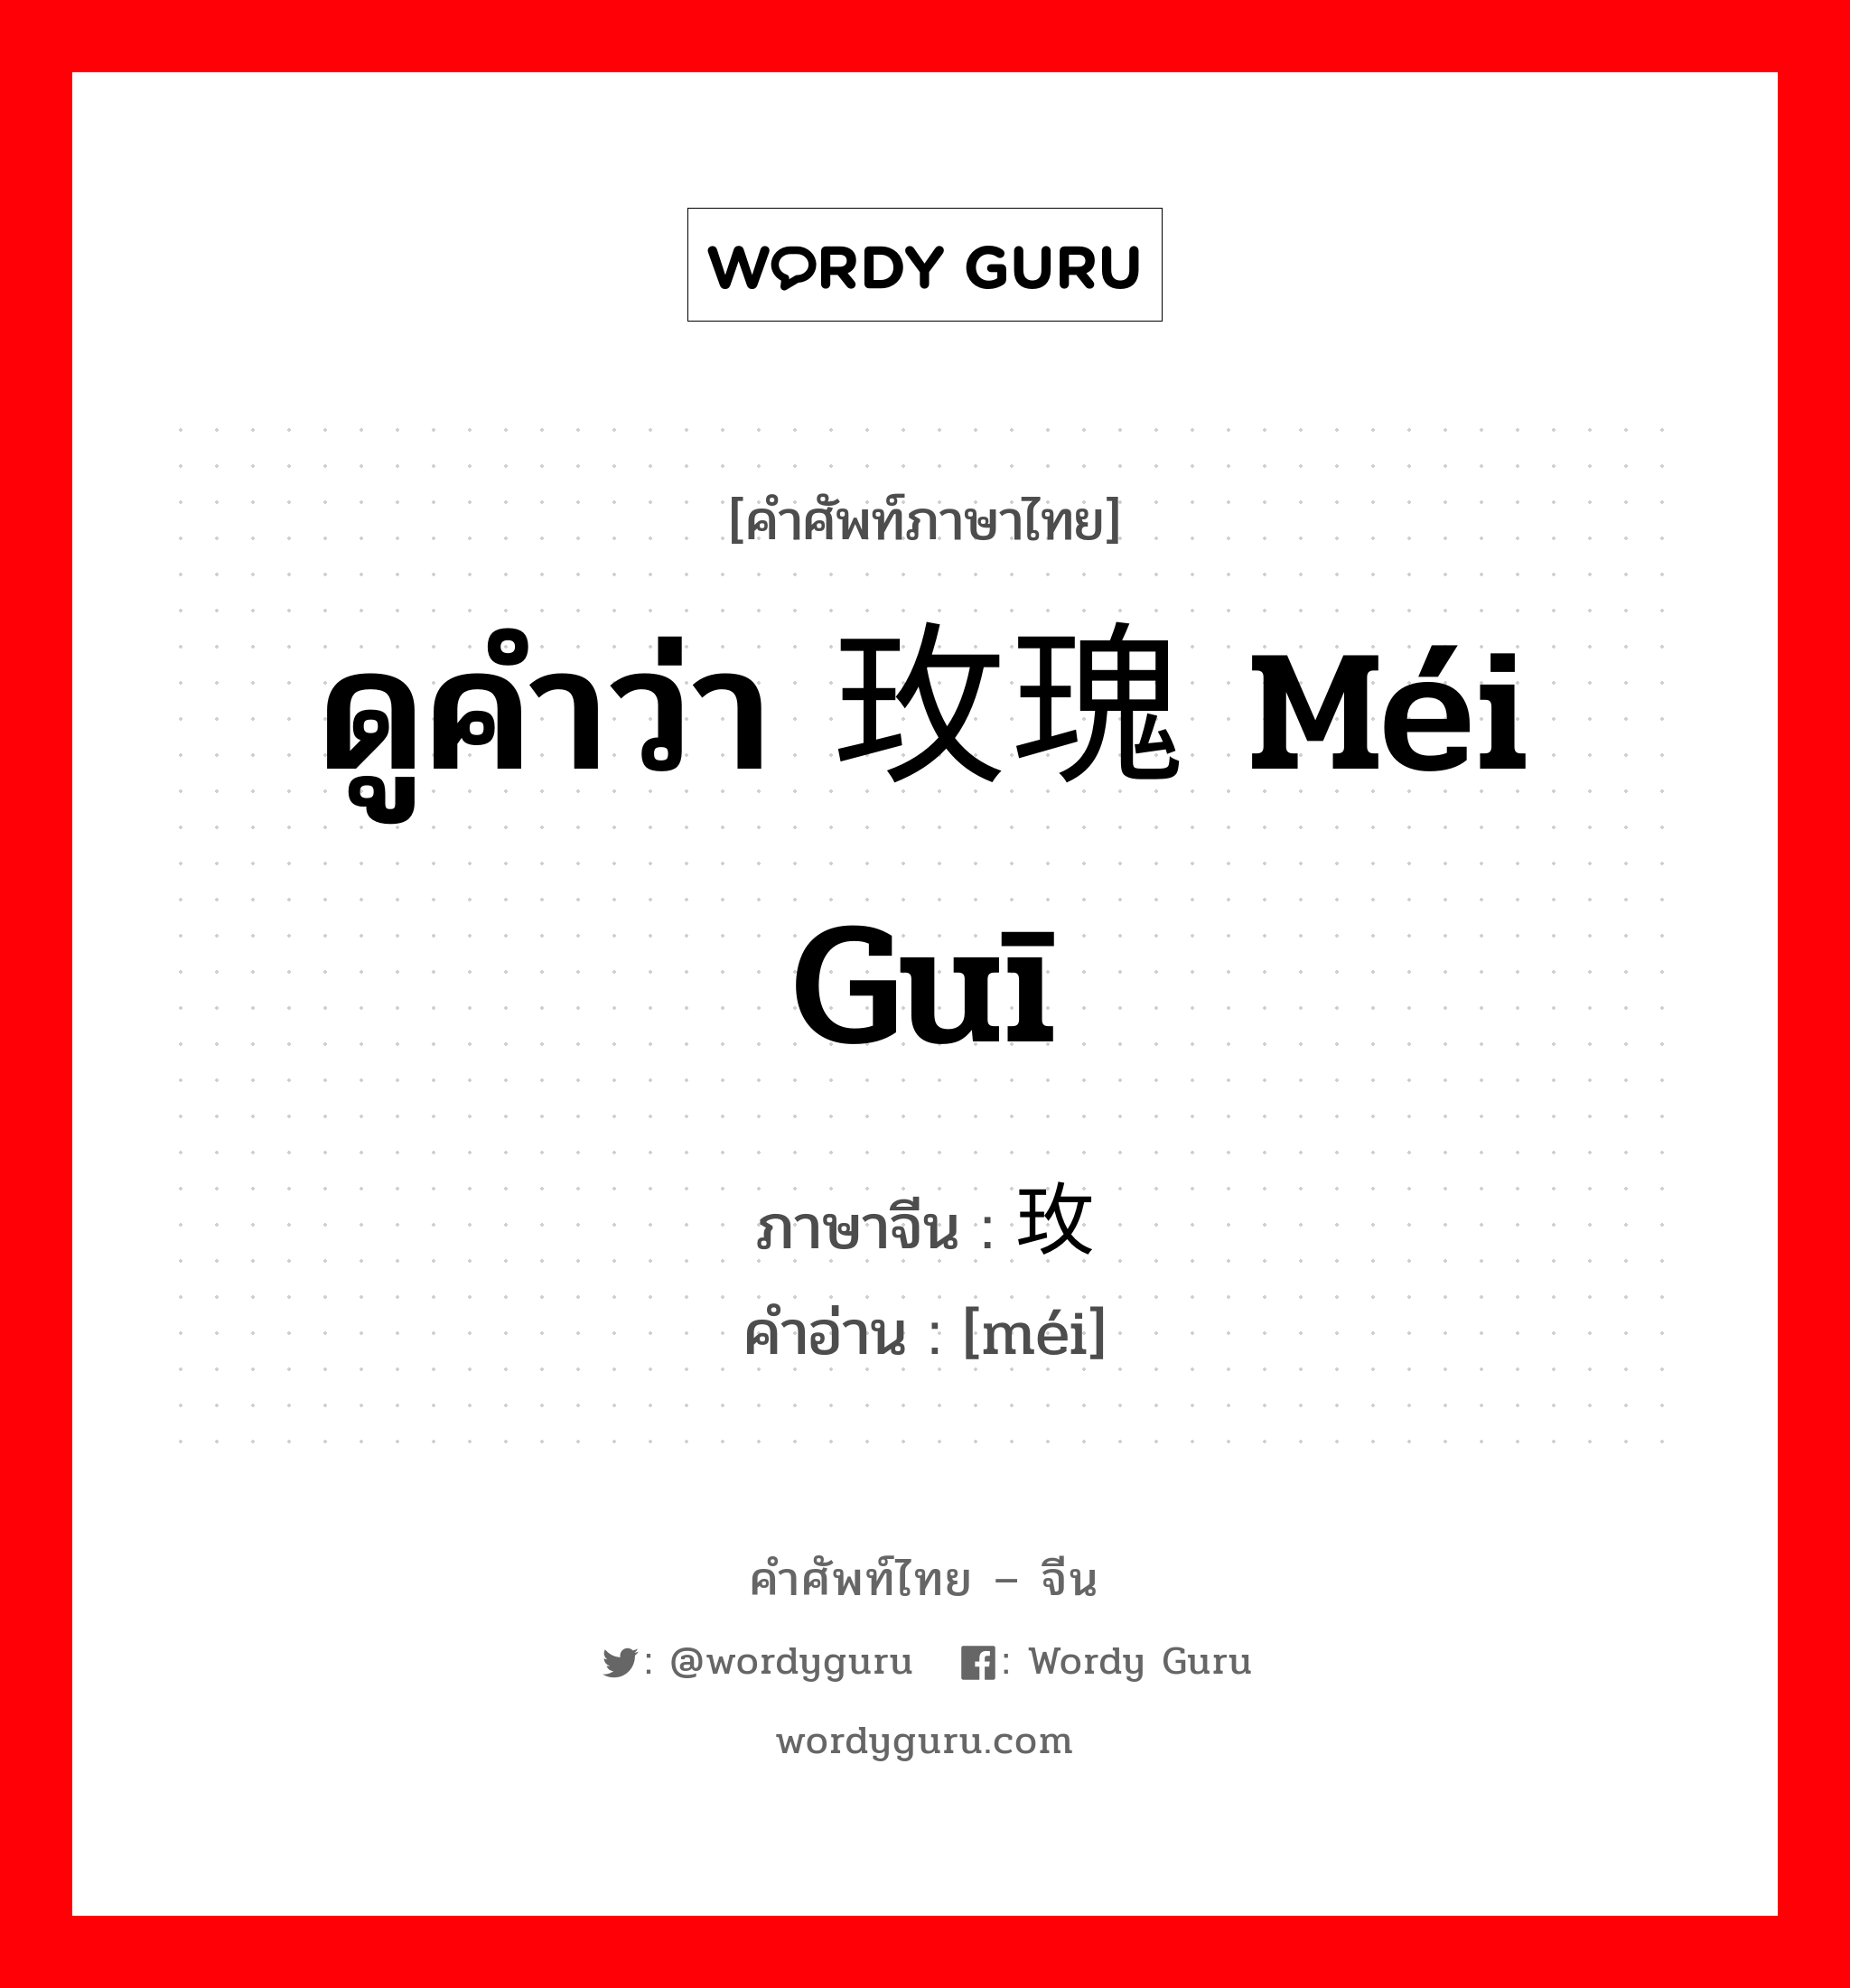 ดูคำว่า 玫瑰 méi guī ภาษาจีนคืออะไร, คำศัพท์ภาษาไทย - จีน ดูคำว่า 玫瑰 méi guī ภาษาจีน 玫 คำอ่าน [méi]